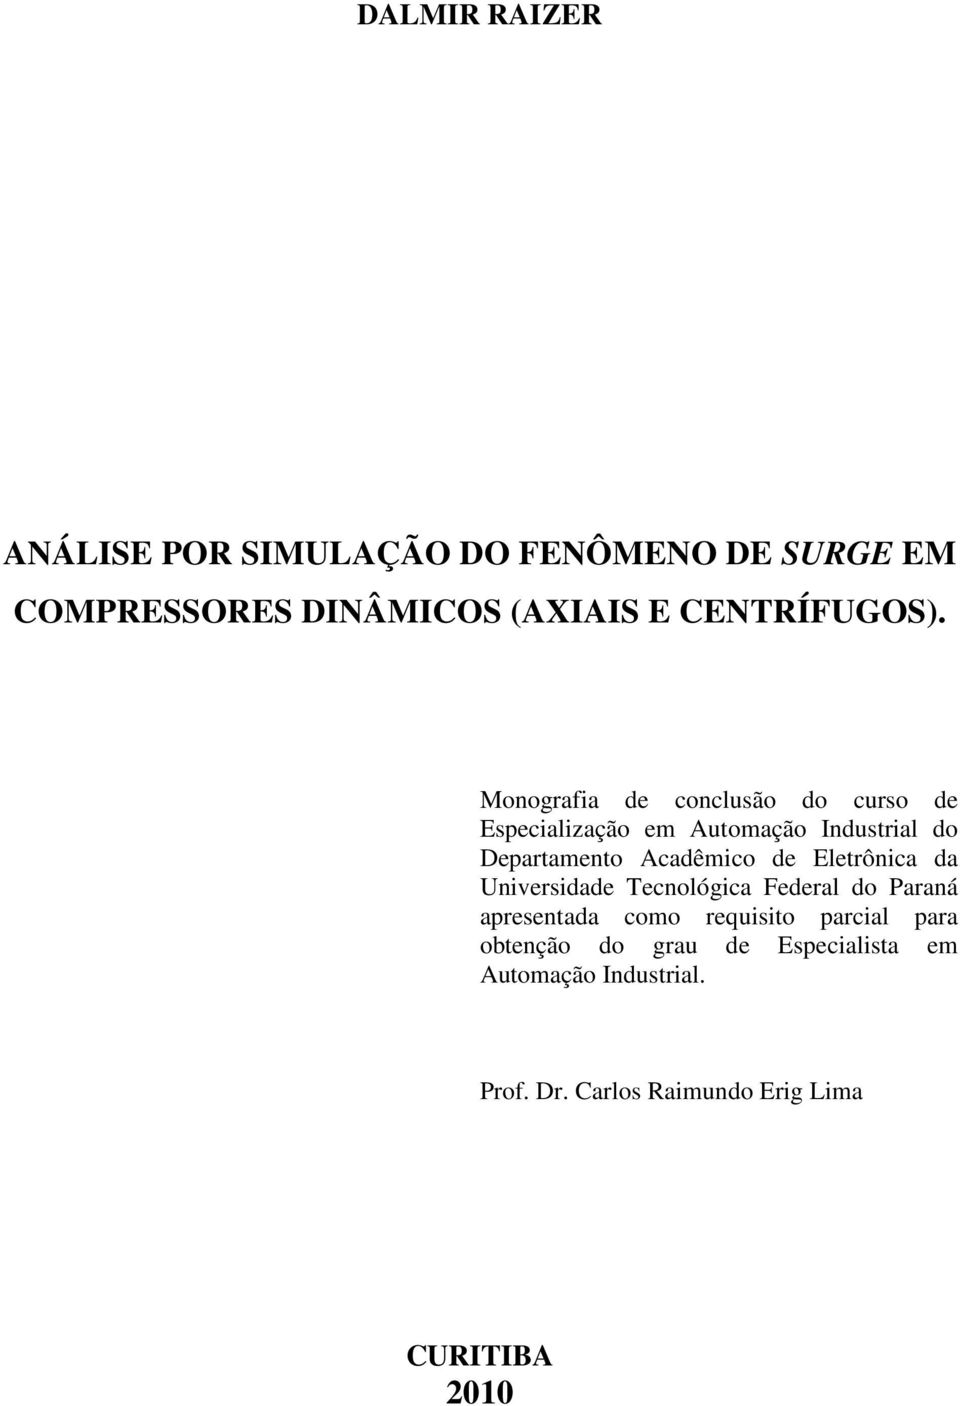 Monografia de conclusão do curso de Especialização em Automação Industrial do Departamento Acadêmico de